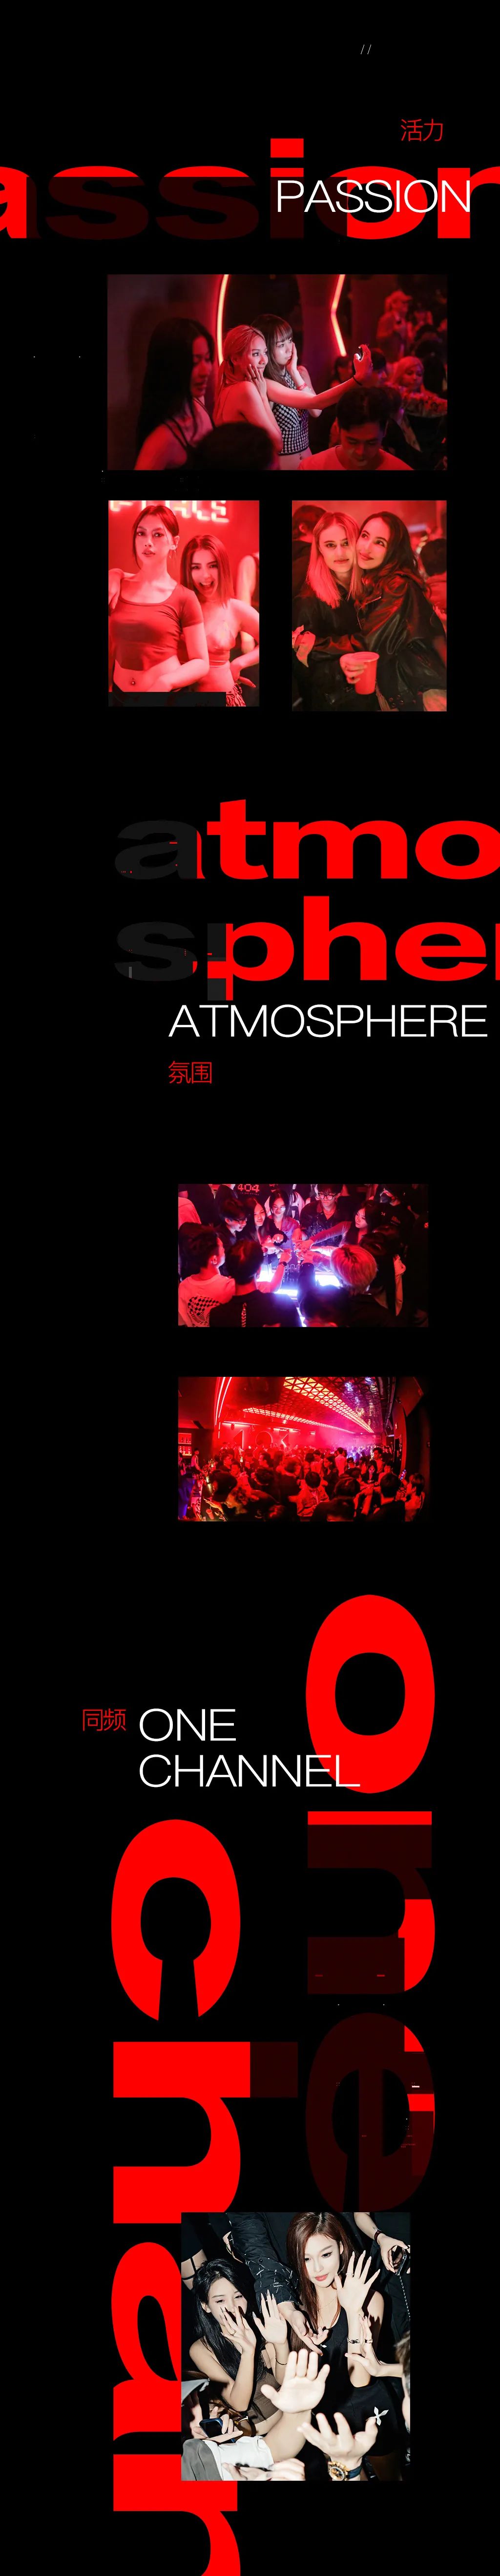 404ClubNotFound | 开启更好的夜晚打开方式-杭州404酒吧/404ClubNotFound